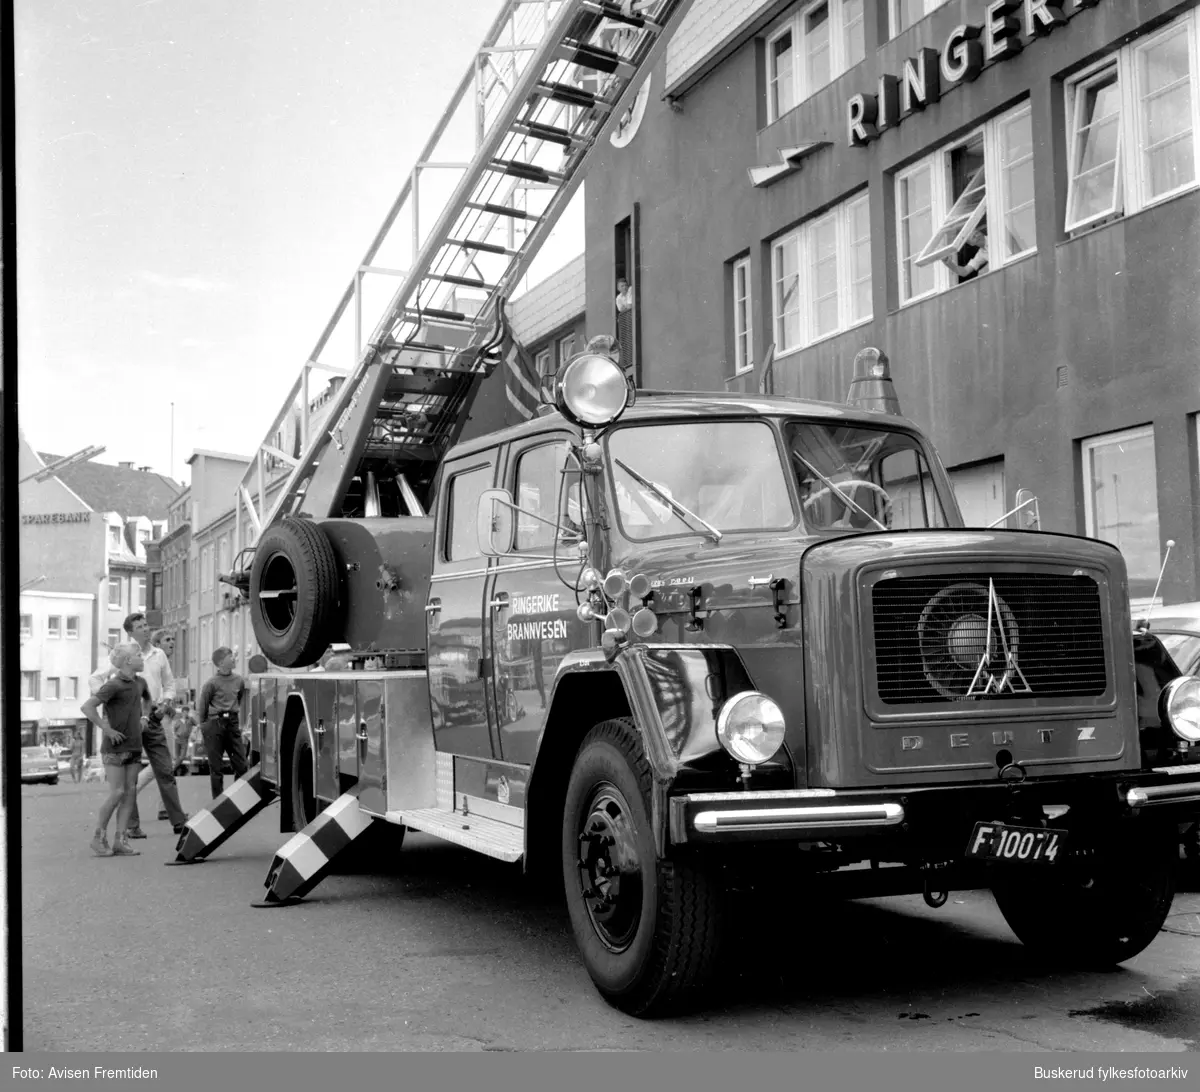 Den nye stigebilen er kommet 
1969
Utenfor brannstasjonen i Fossveien